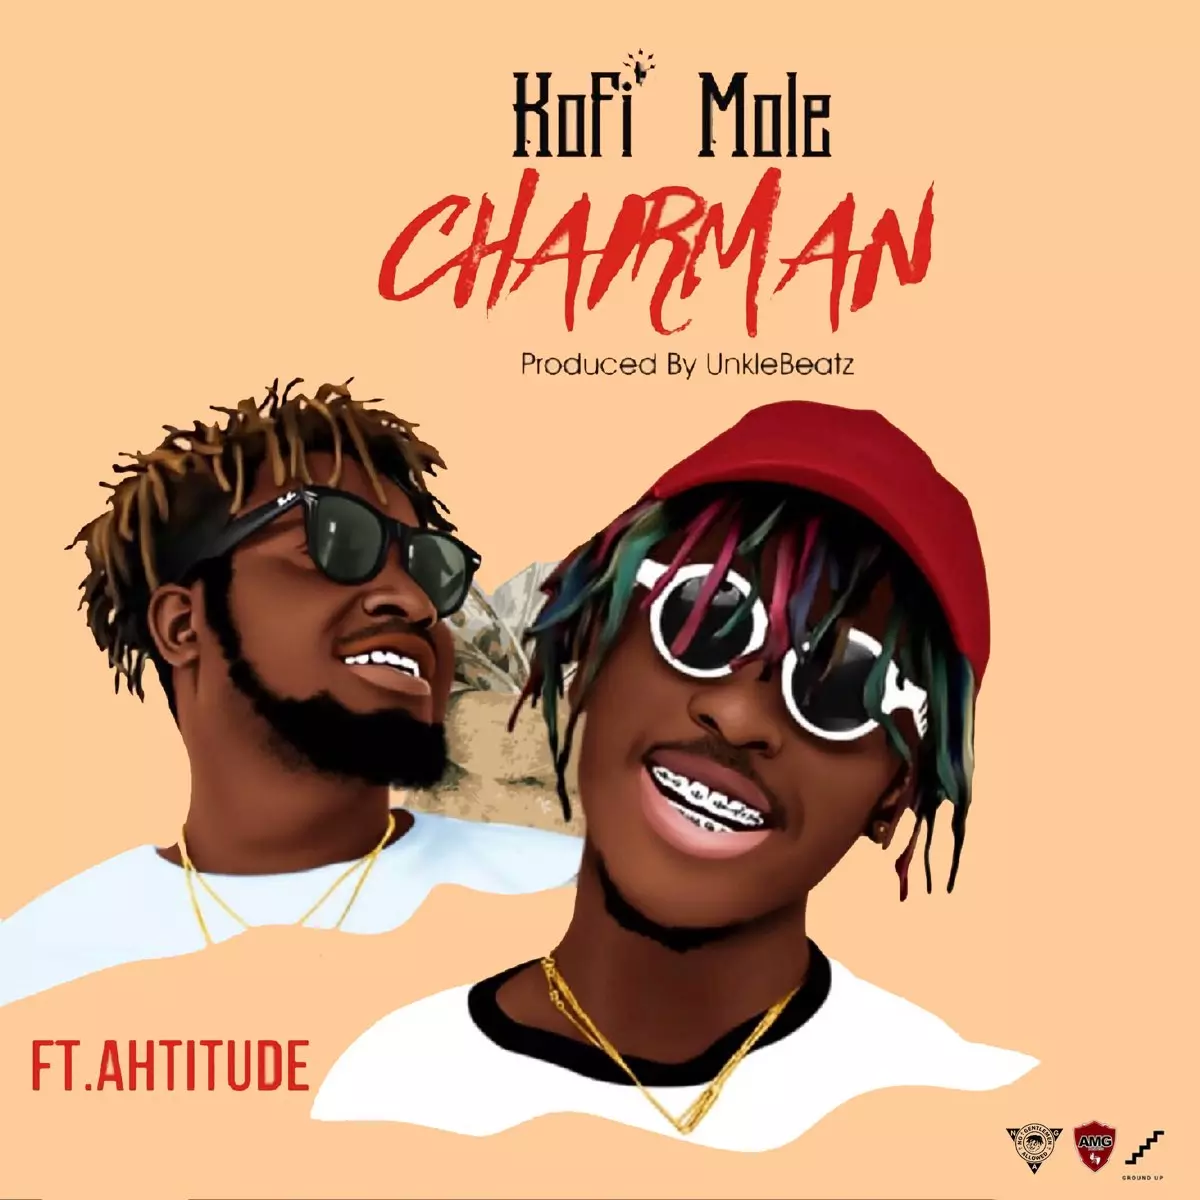 Chairman (feat. Ahtitude) - Single by Kofi Mole on Apple Music